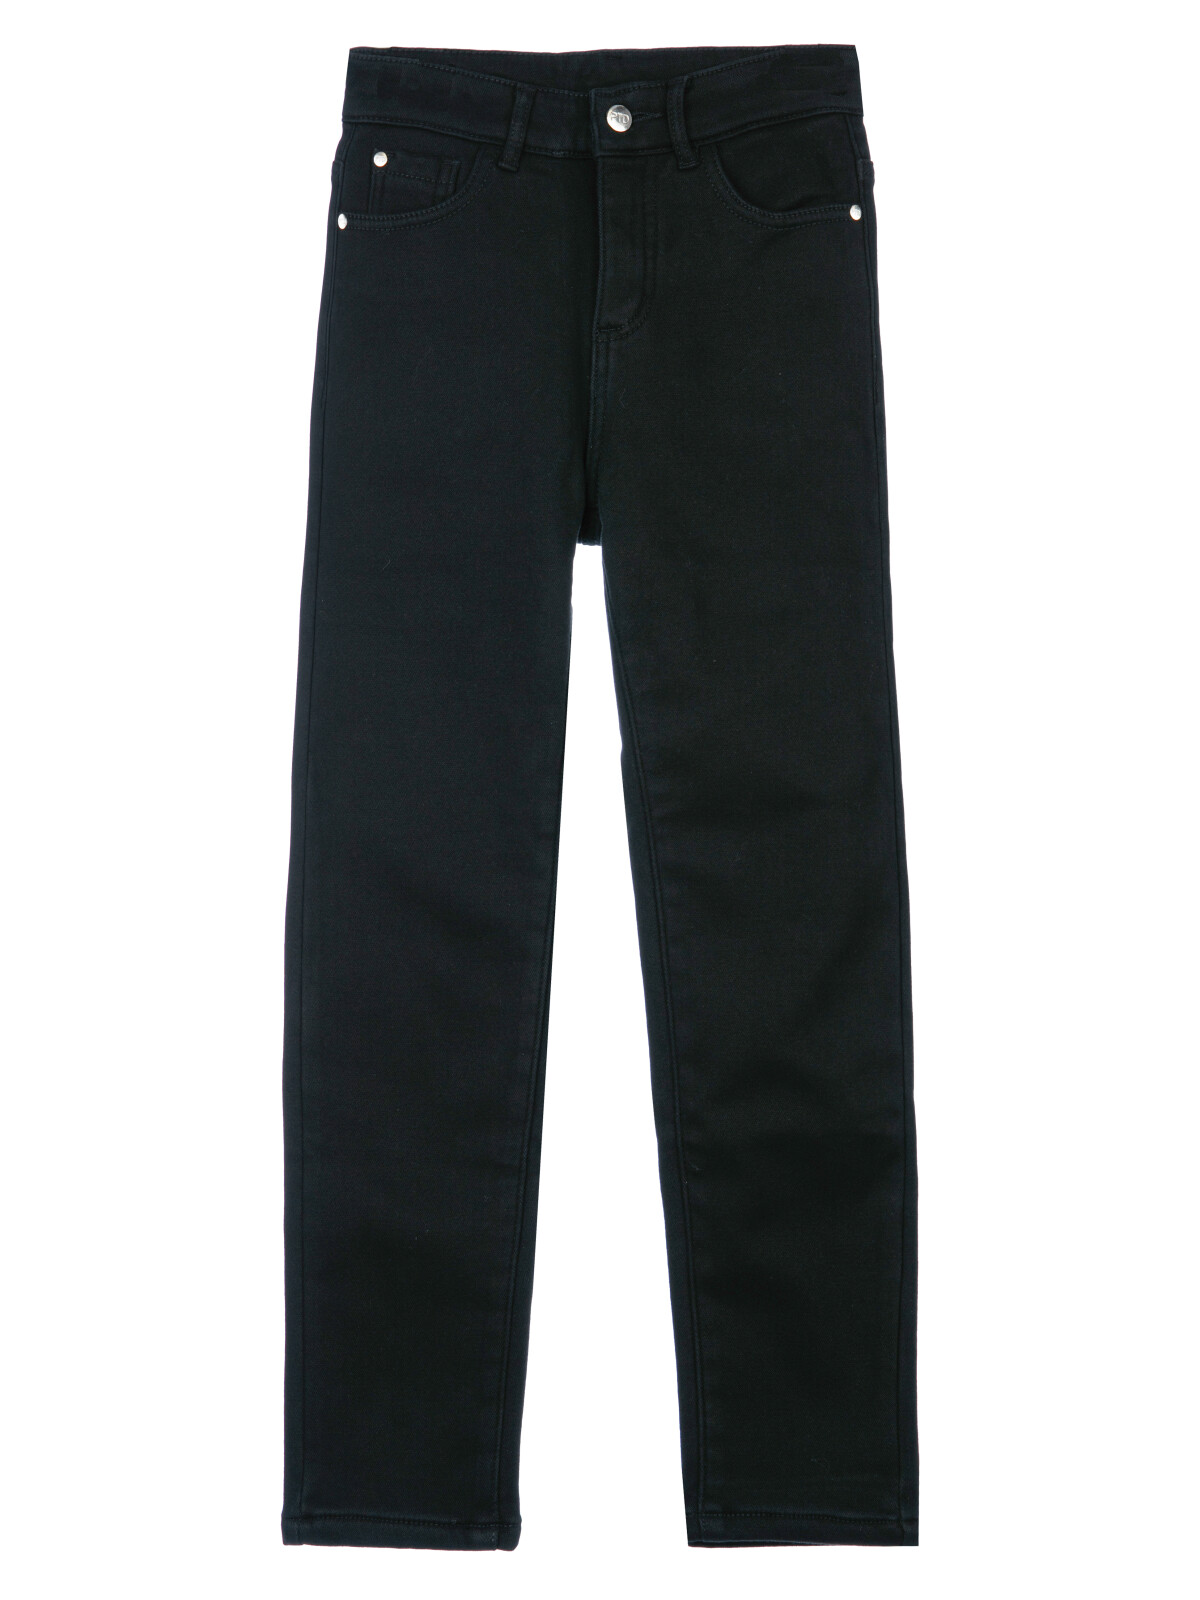 Брюки текстильные джинсовые утепленные флисом для мальчиков PlayToday, черный, 158